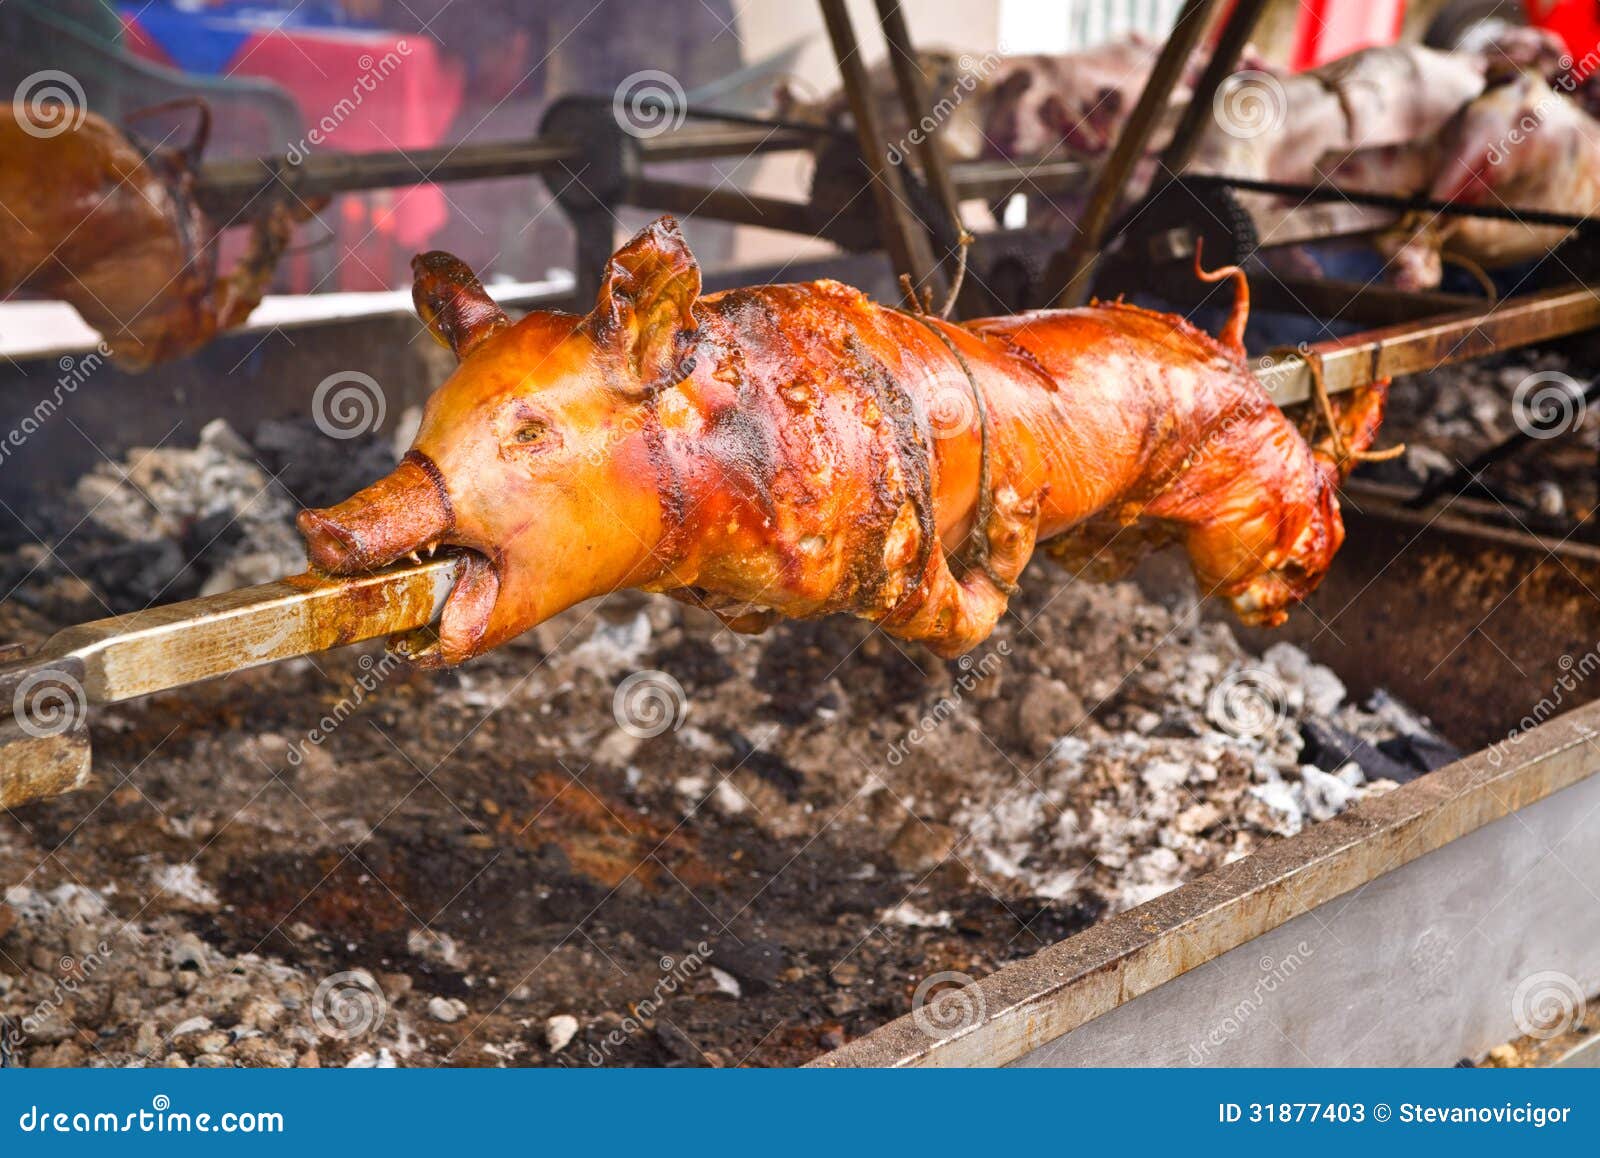 德国烤猪肘的做法大全_德国烤猪肘的家常做法 - 心食神